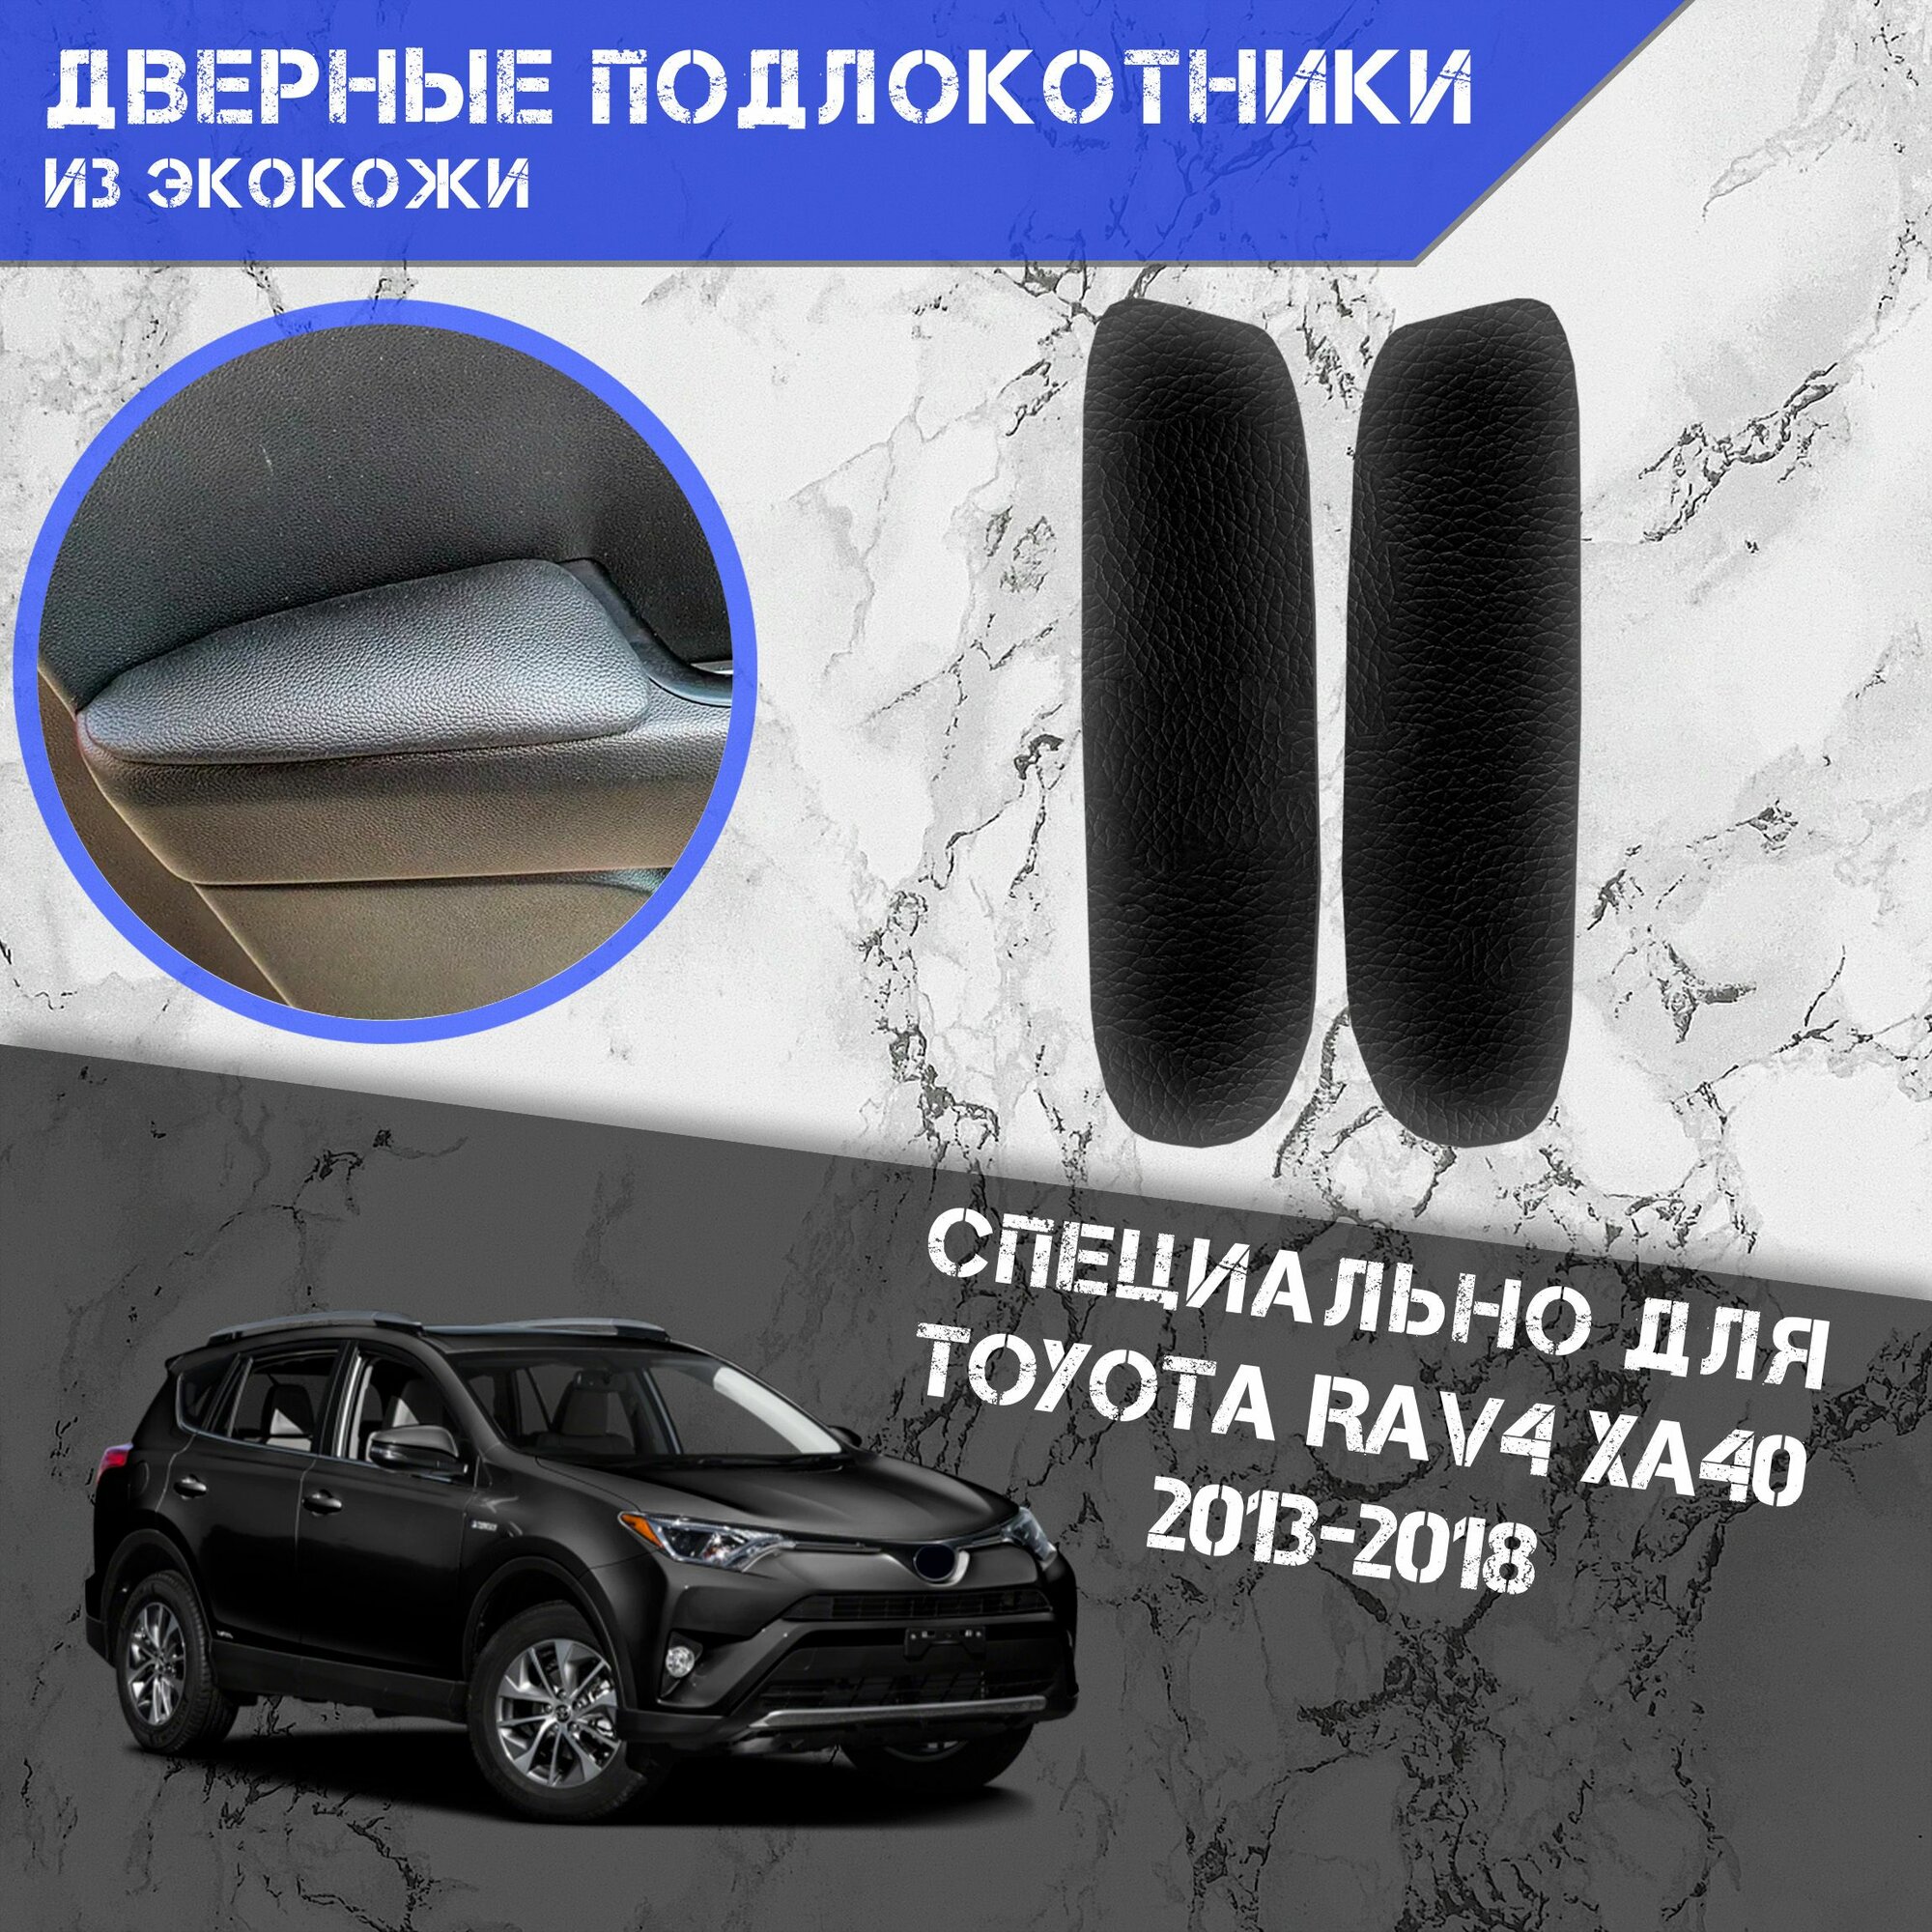 Дверные Подлокотники из экокожи на двери (Мягкие накладки) для Тойота Рав 4 / Toyota Rav4 XA40 2013-2018 (Задние 2 шт) Чёрные